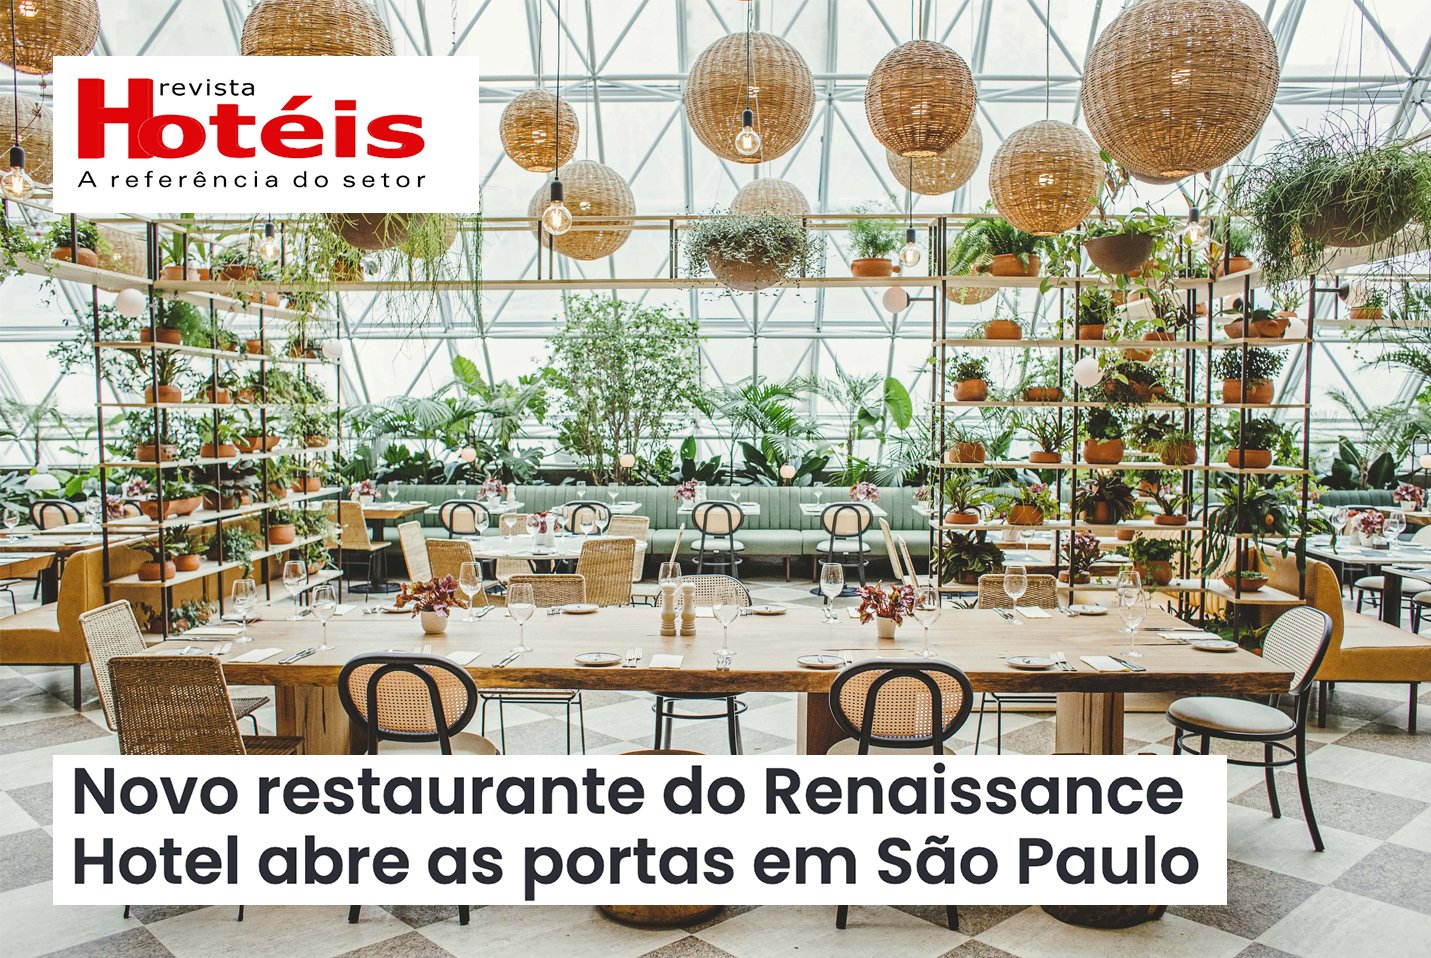 29/09/21 - Novo restaurante do Renaissance Hotel abre as portas em São Paulo